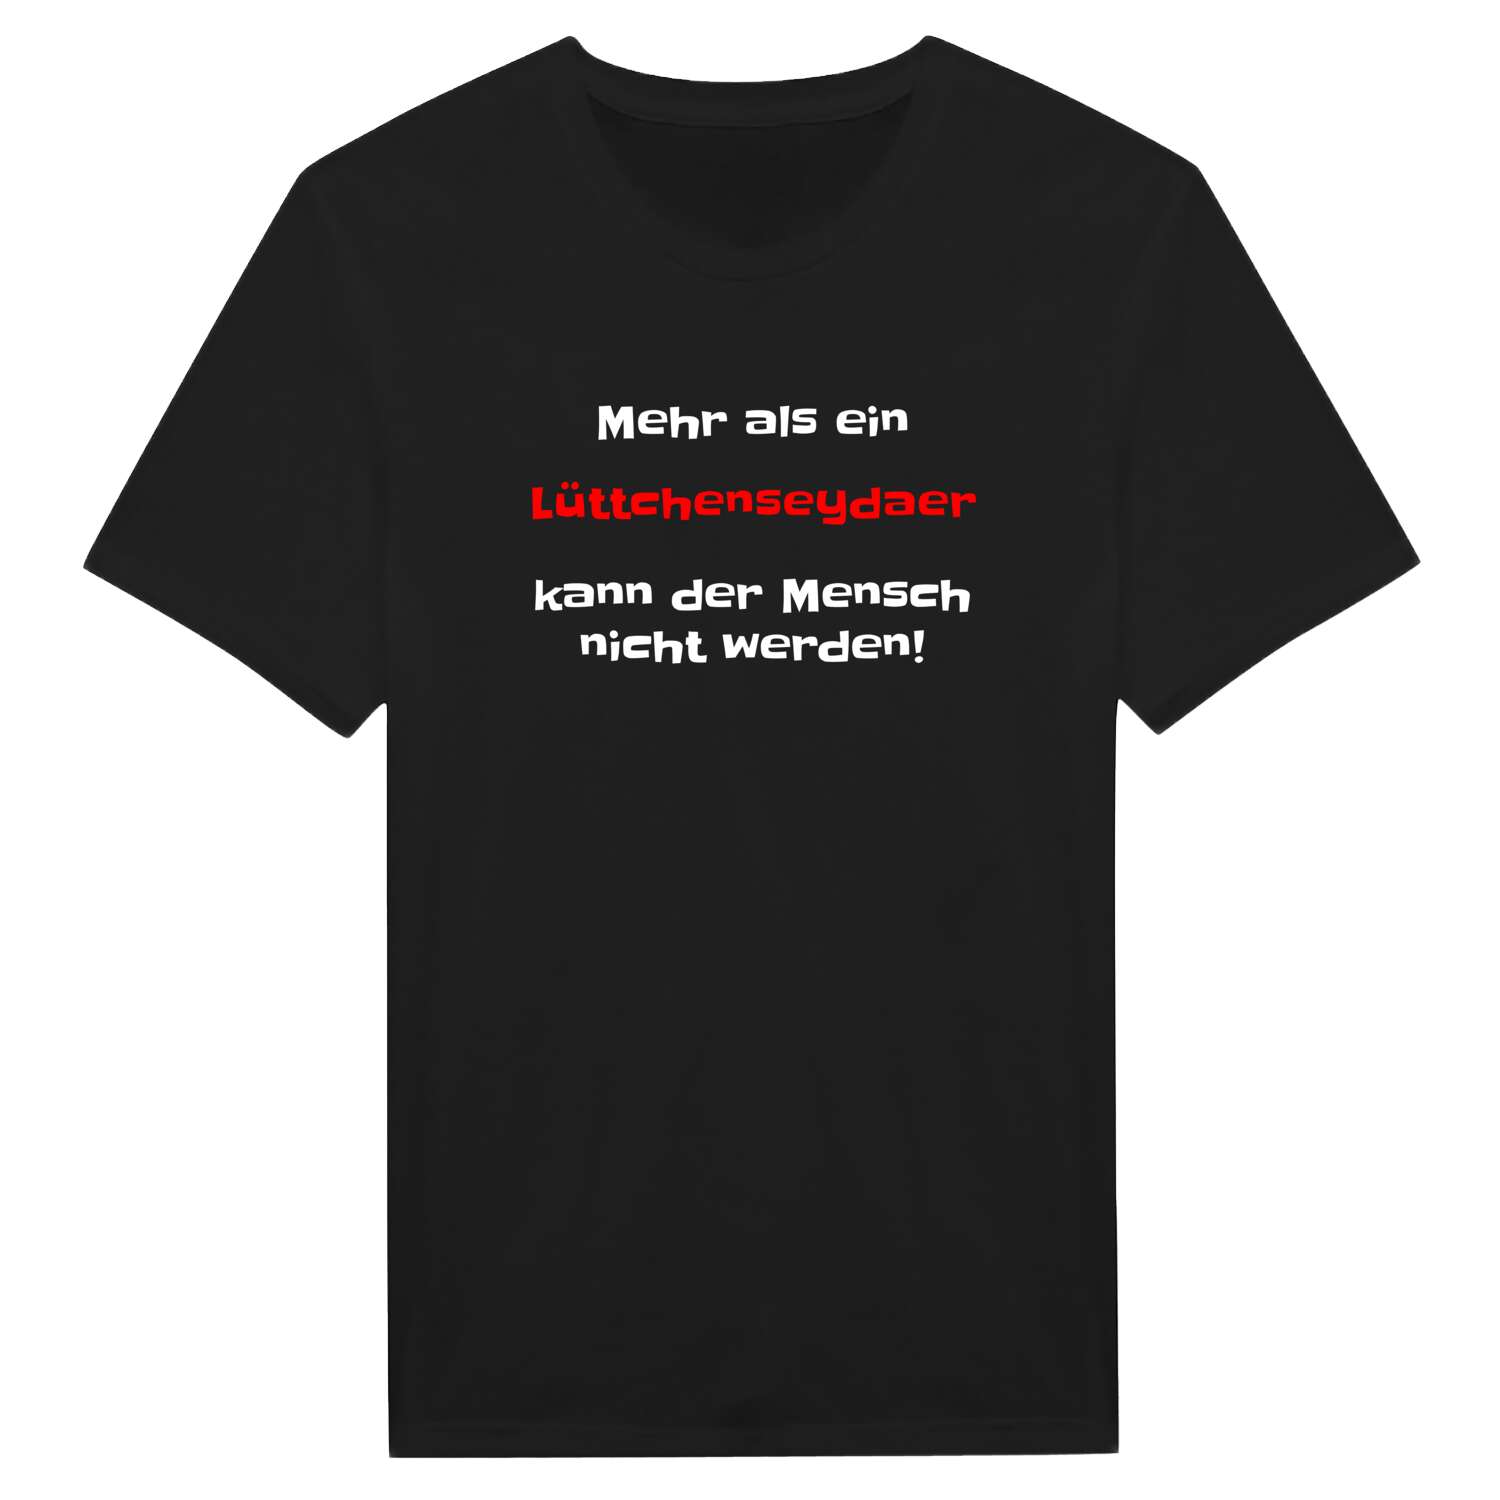 Lüttchenseyda T-Shirt »Mehr als ein«